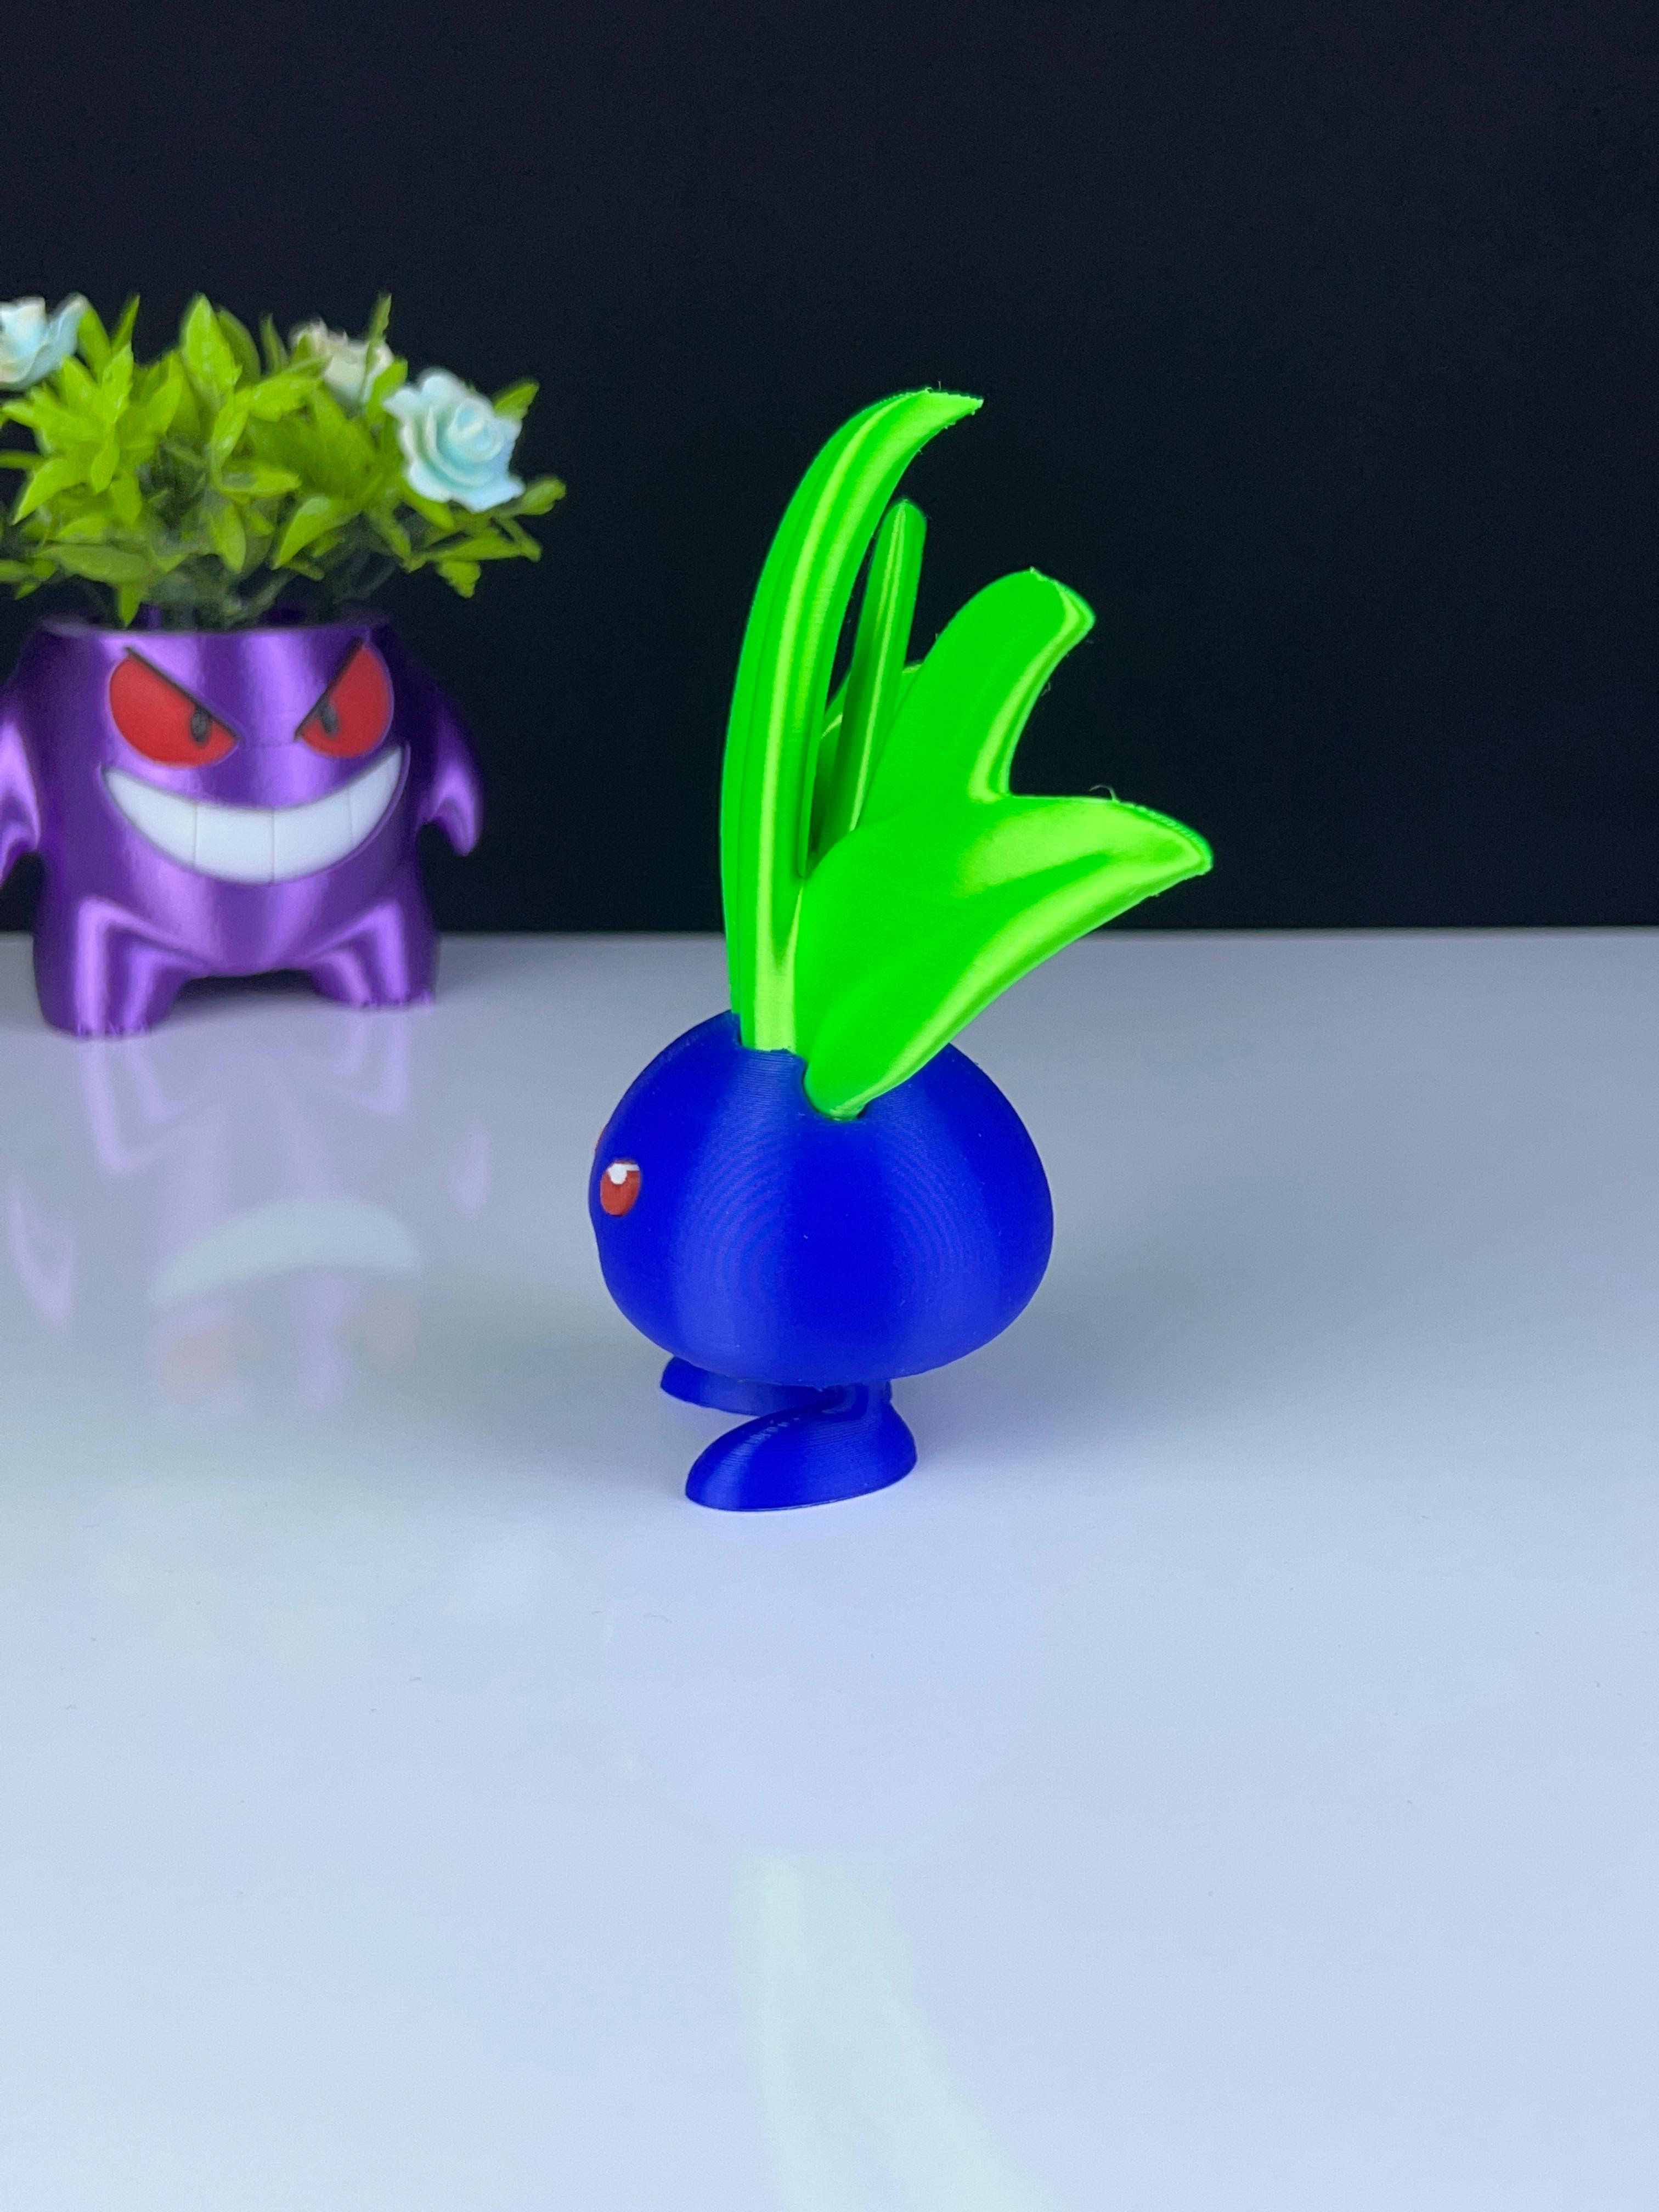 Oddish Pokemon - Multipart 3d model